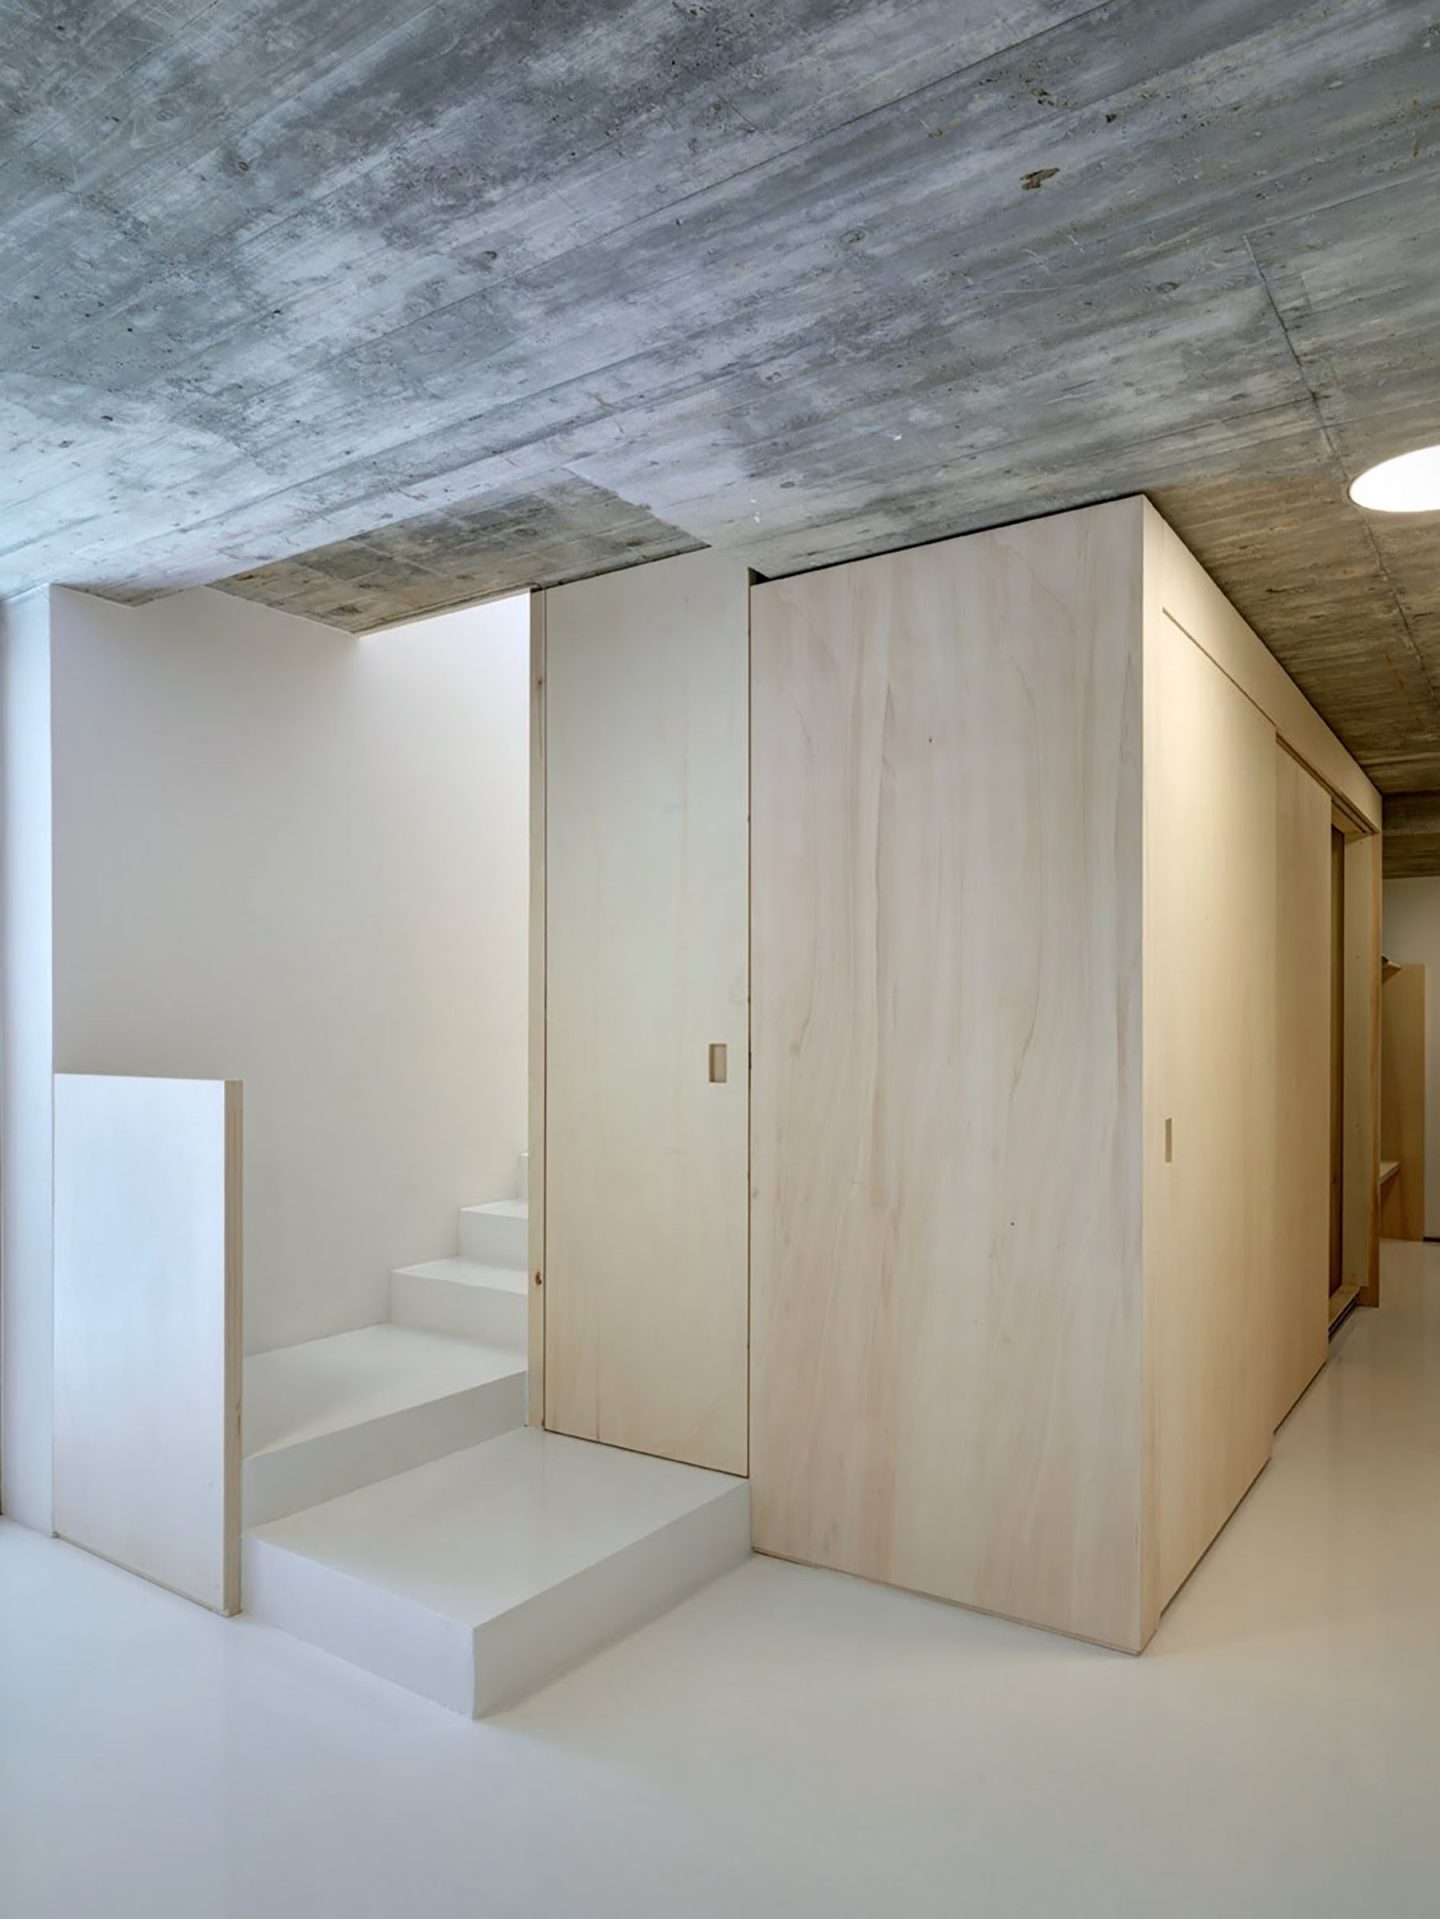 iGNANT-Architecture-Marco-Ortalli-Casa-Crb-0021